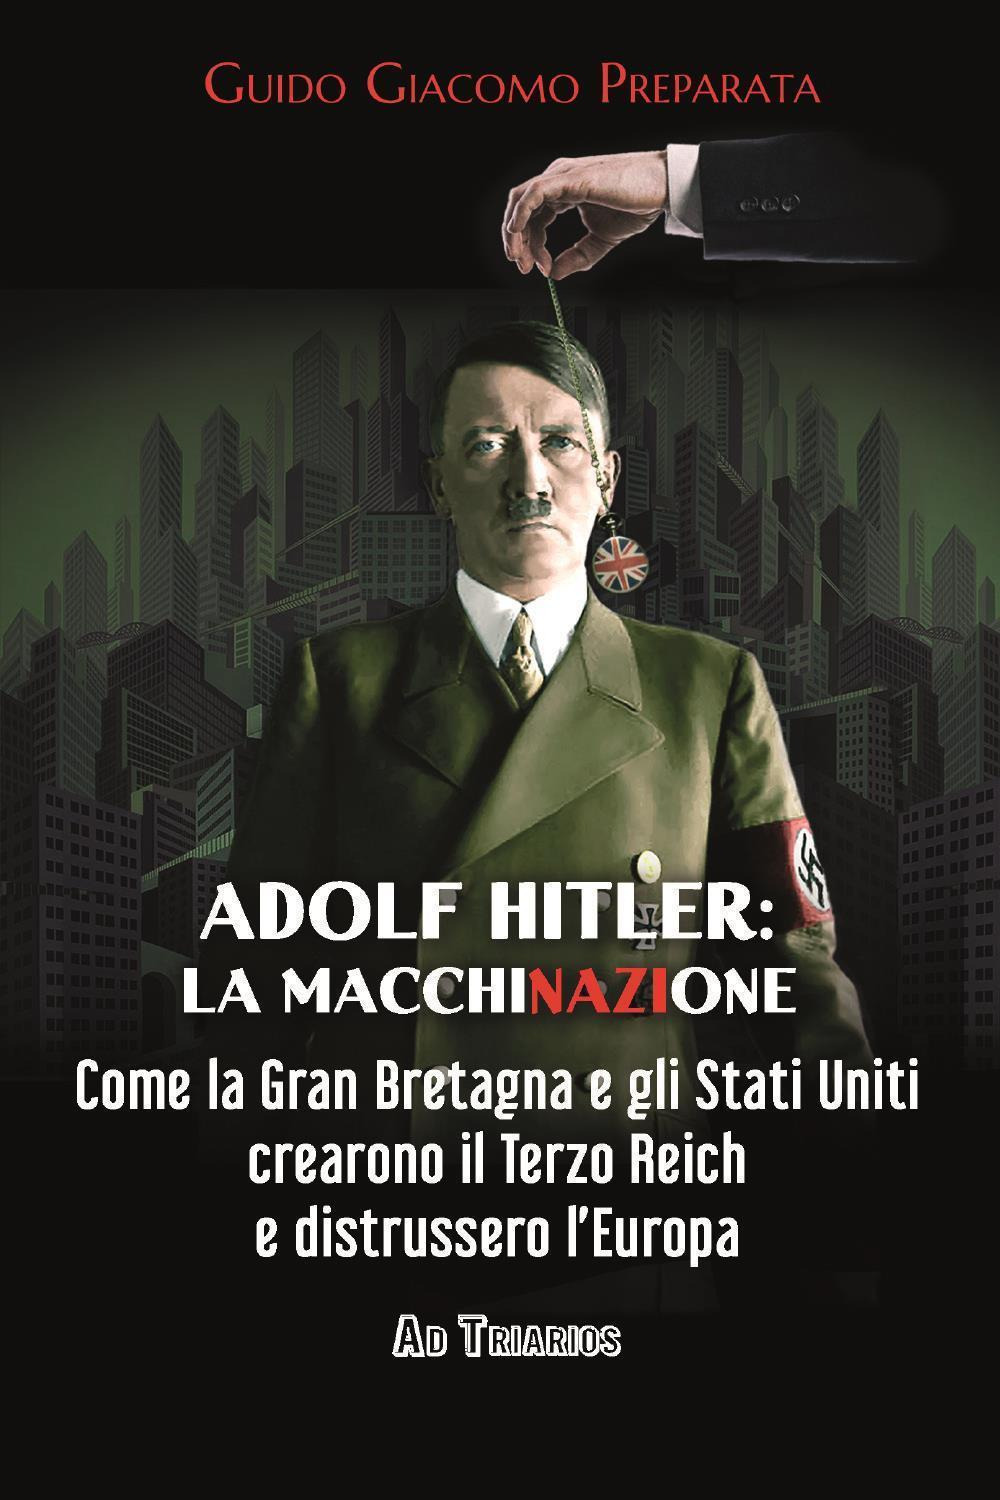 Adolf Hitler: la macchinazione. Come la Gran Bretagna e gli Stati Uniti crearono il terzo reich e distrussero l'Europa